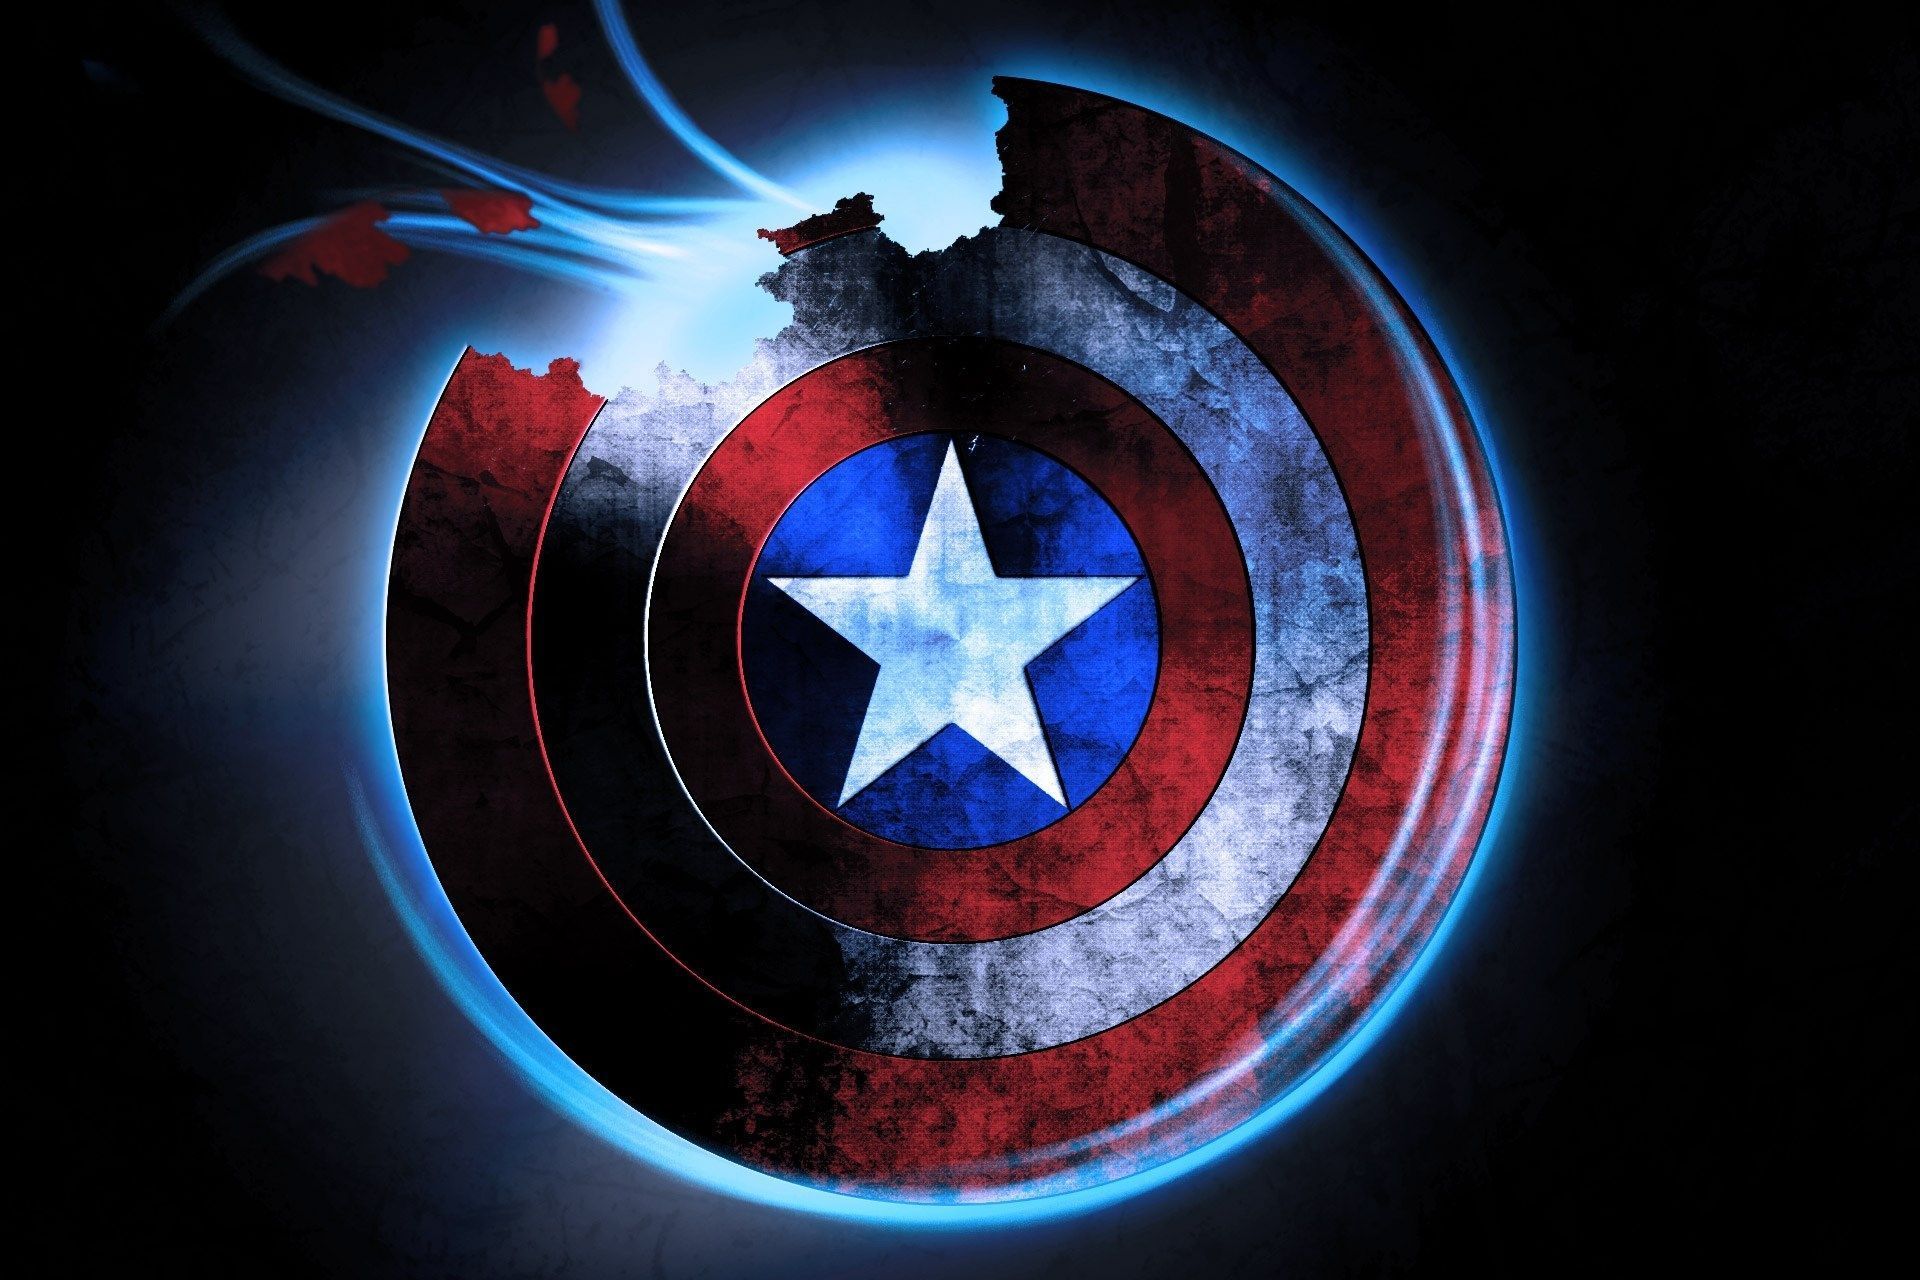 Download free Digital Art Of Captain America Iphone Wallpaper -  MrWallpaper.com